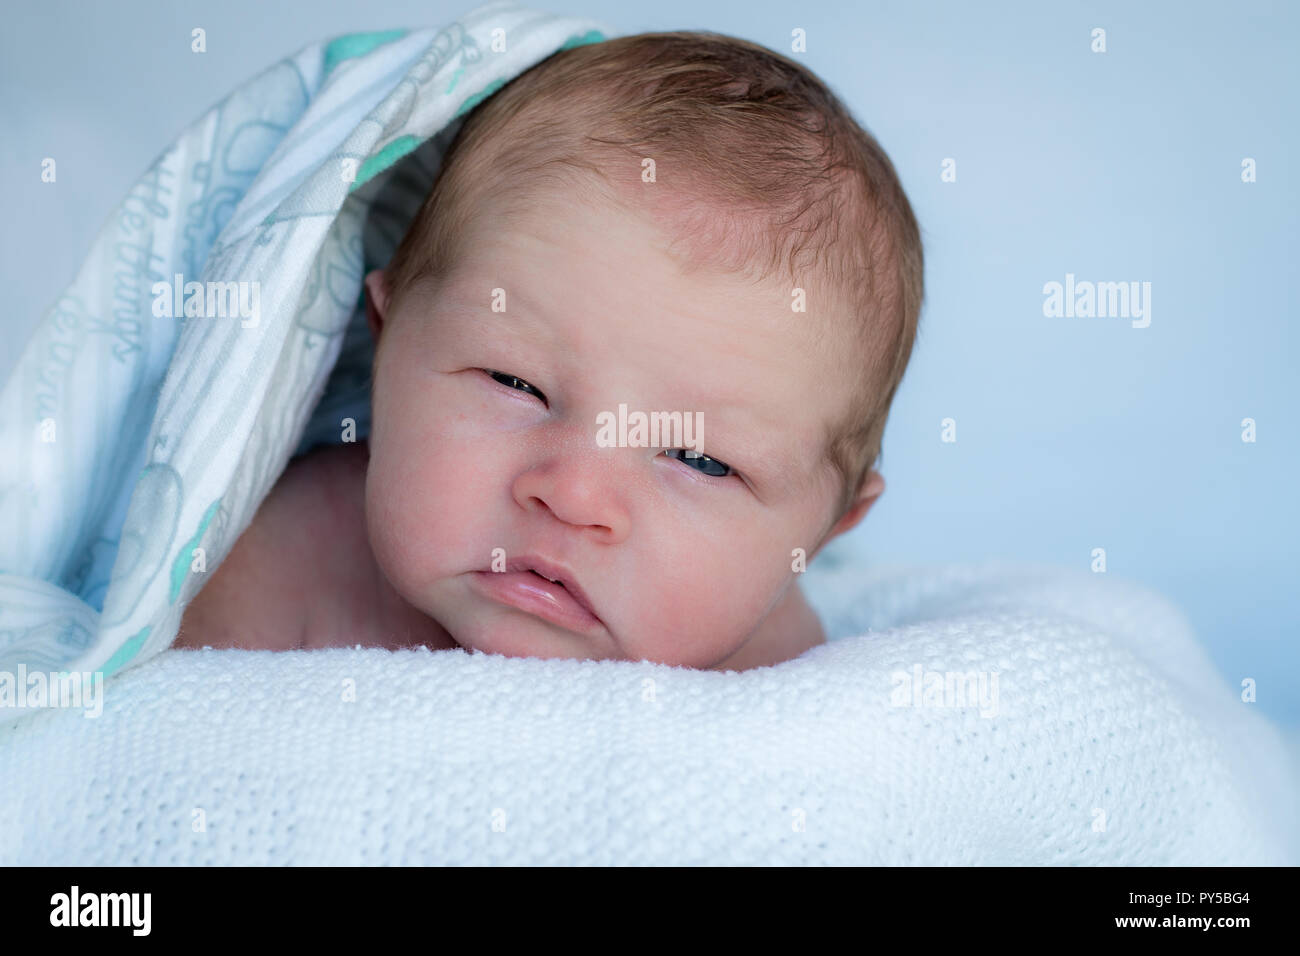 Bébé nouveau-né sur le ventre de pose à la recherche jusqu'à l'appareil photo avec une couverture sur la tête. Banque D'Images